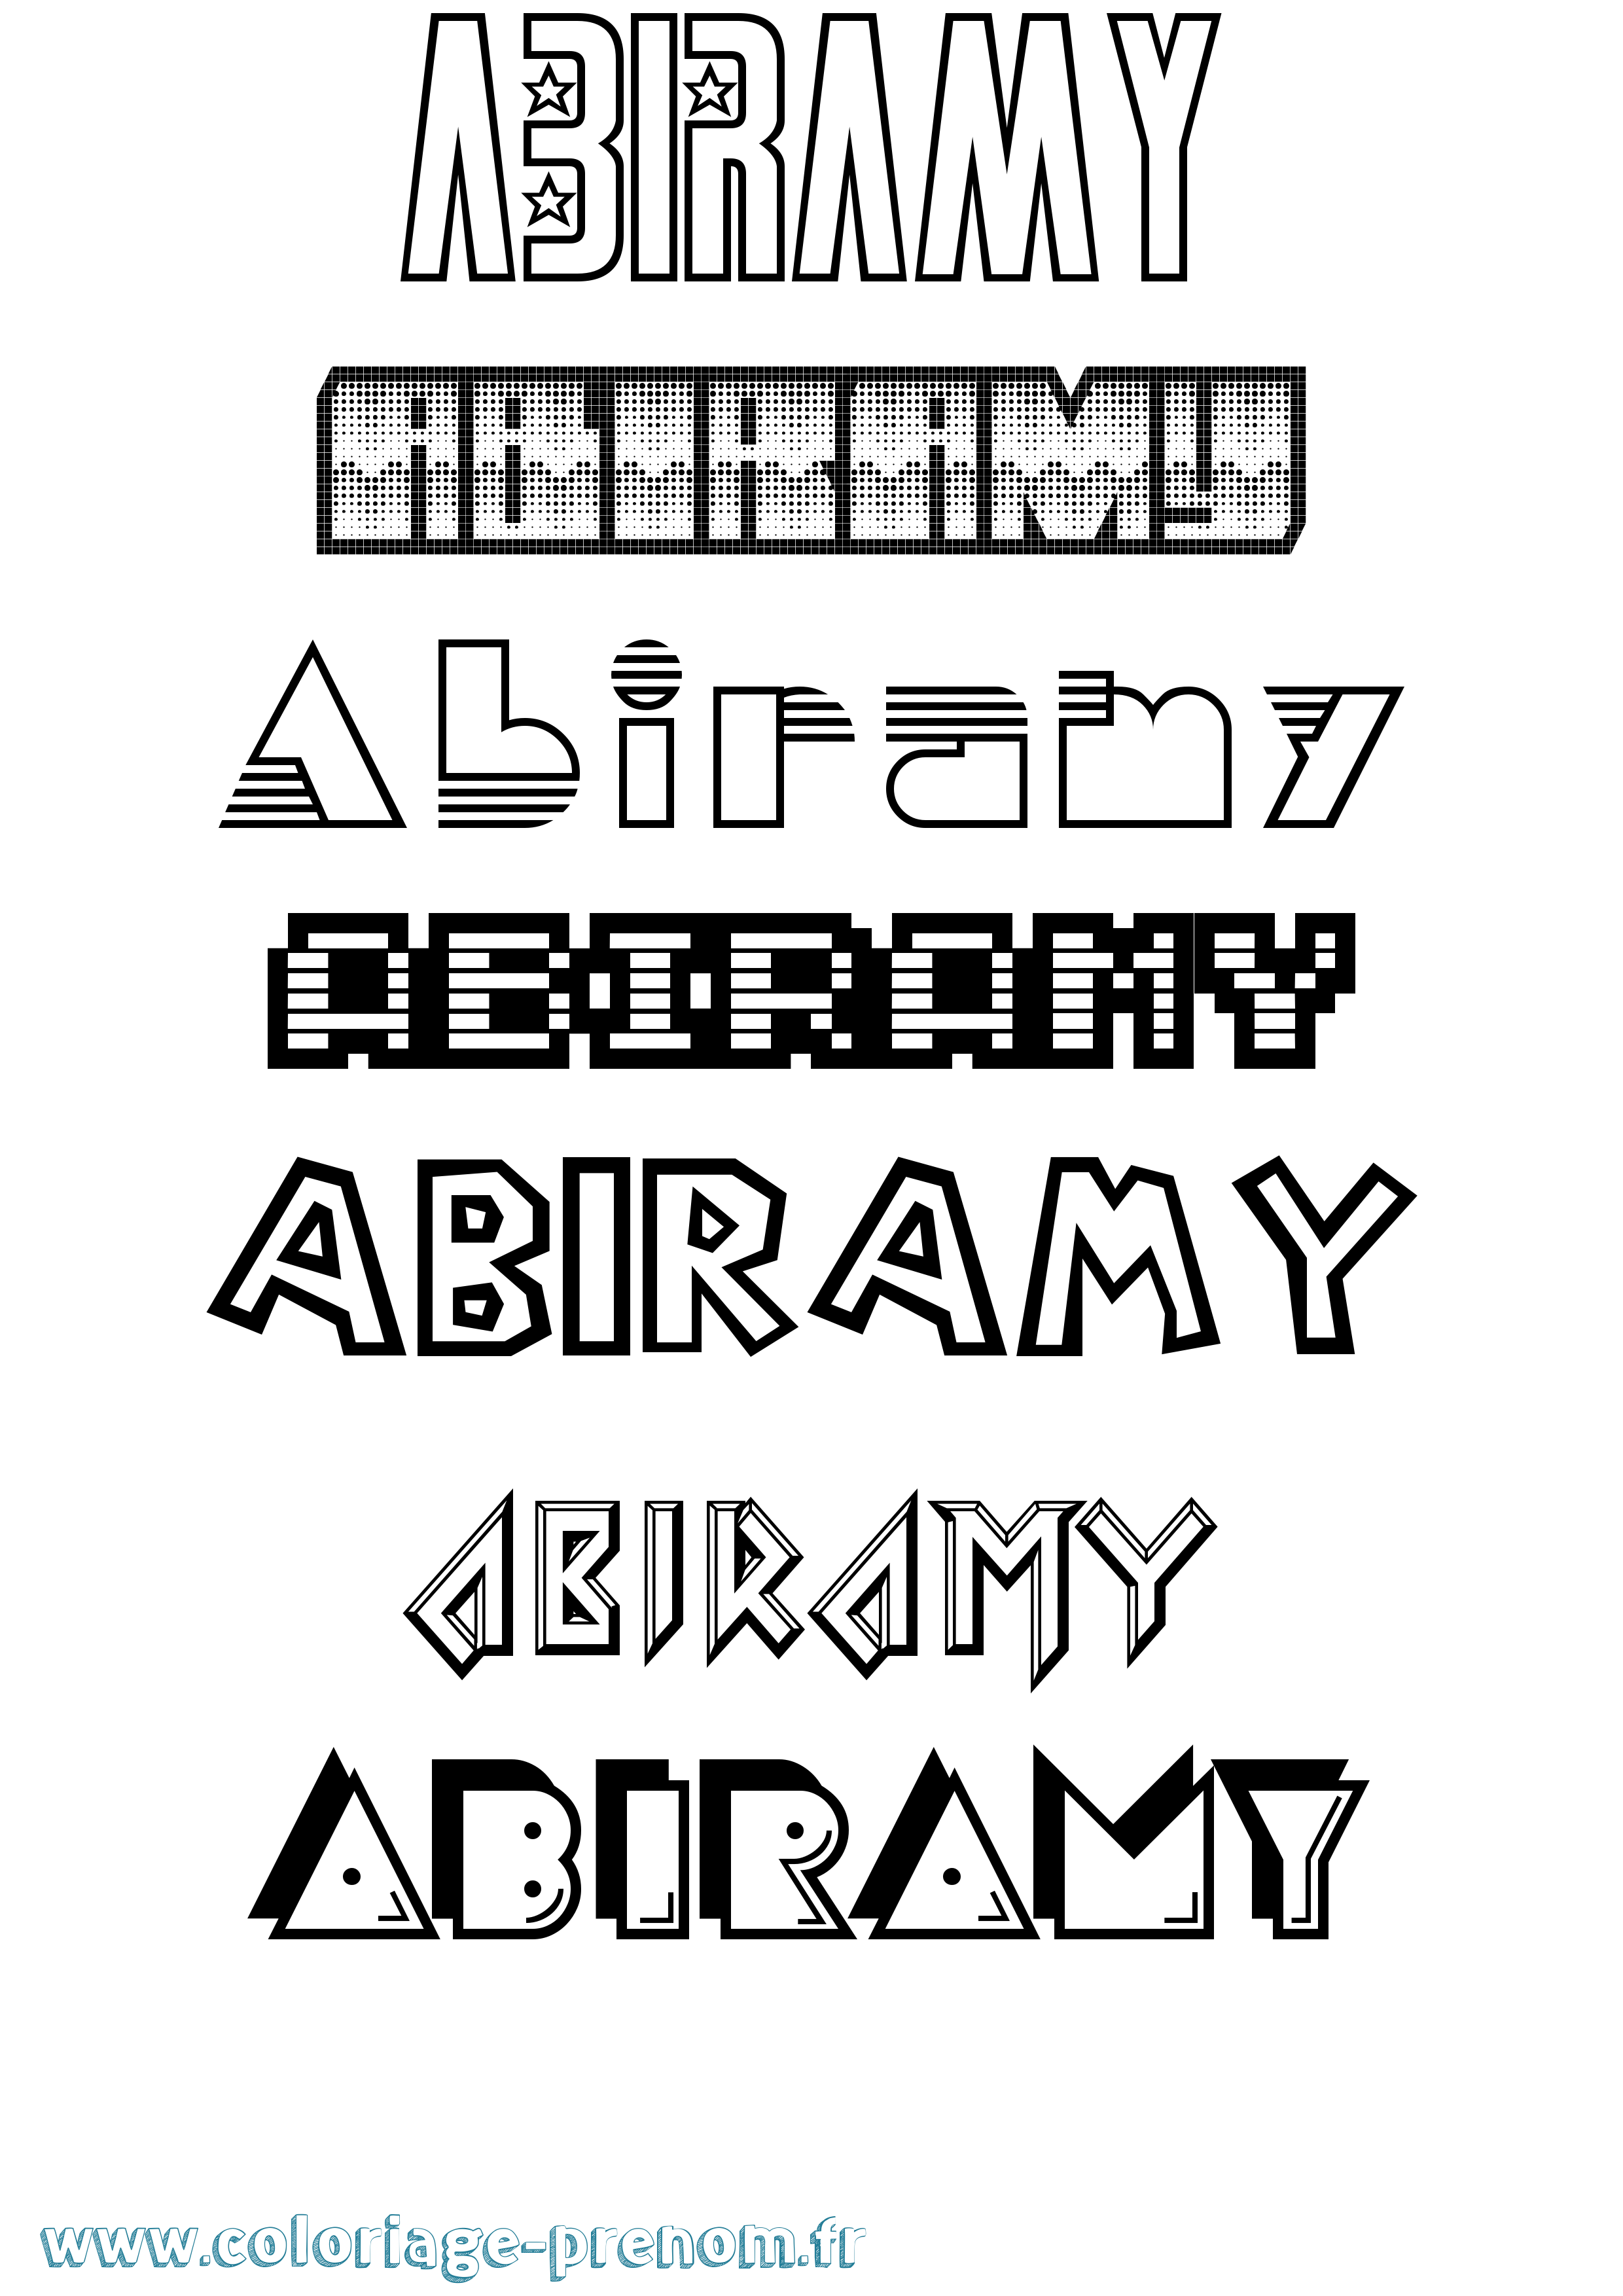 Coloriage prénom Abiramy Jeux Vidéos